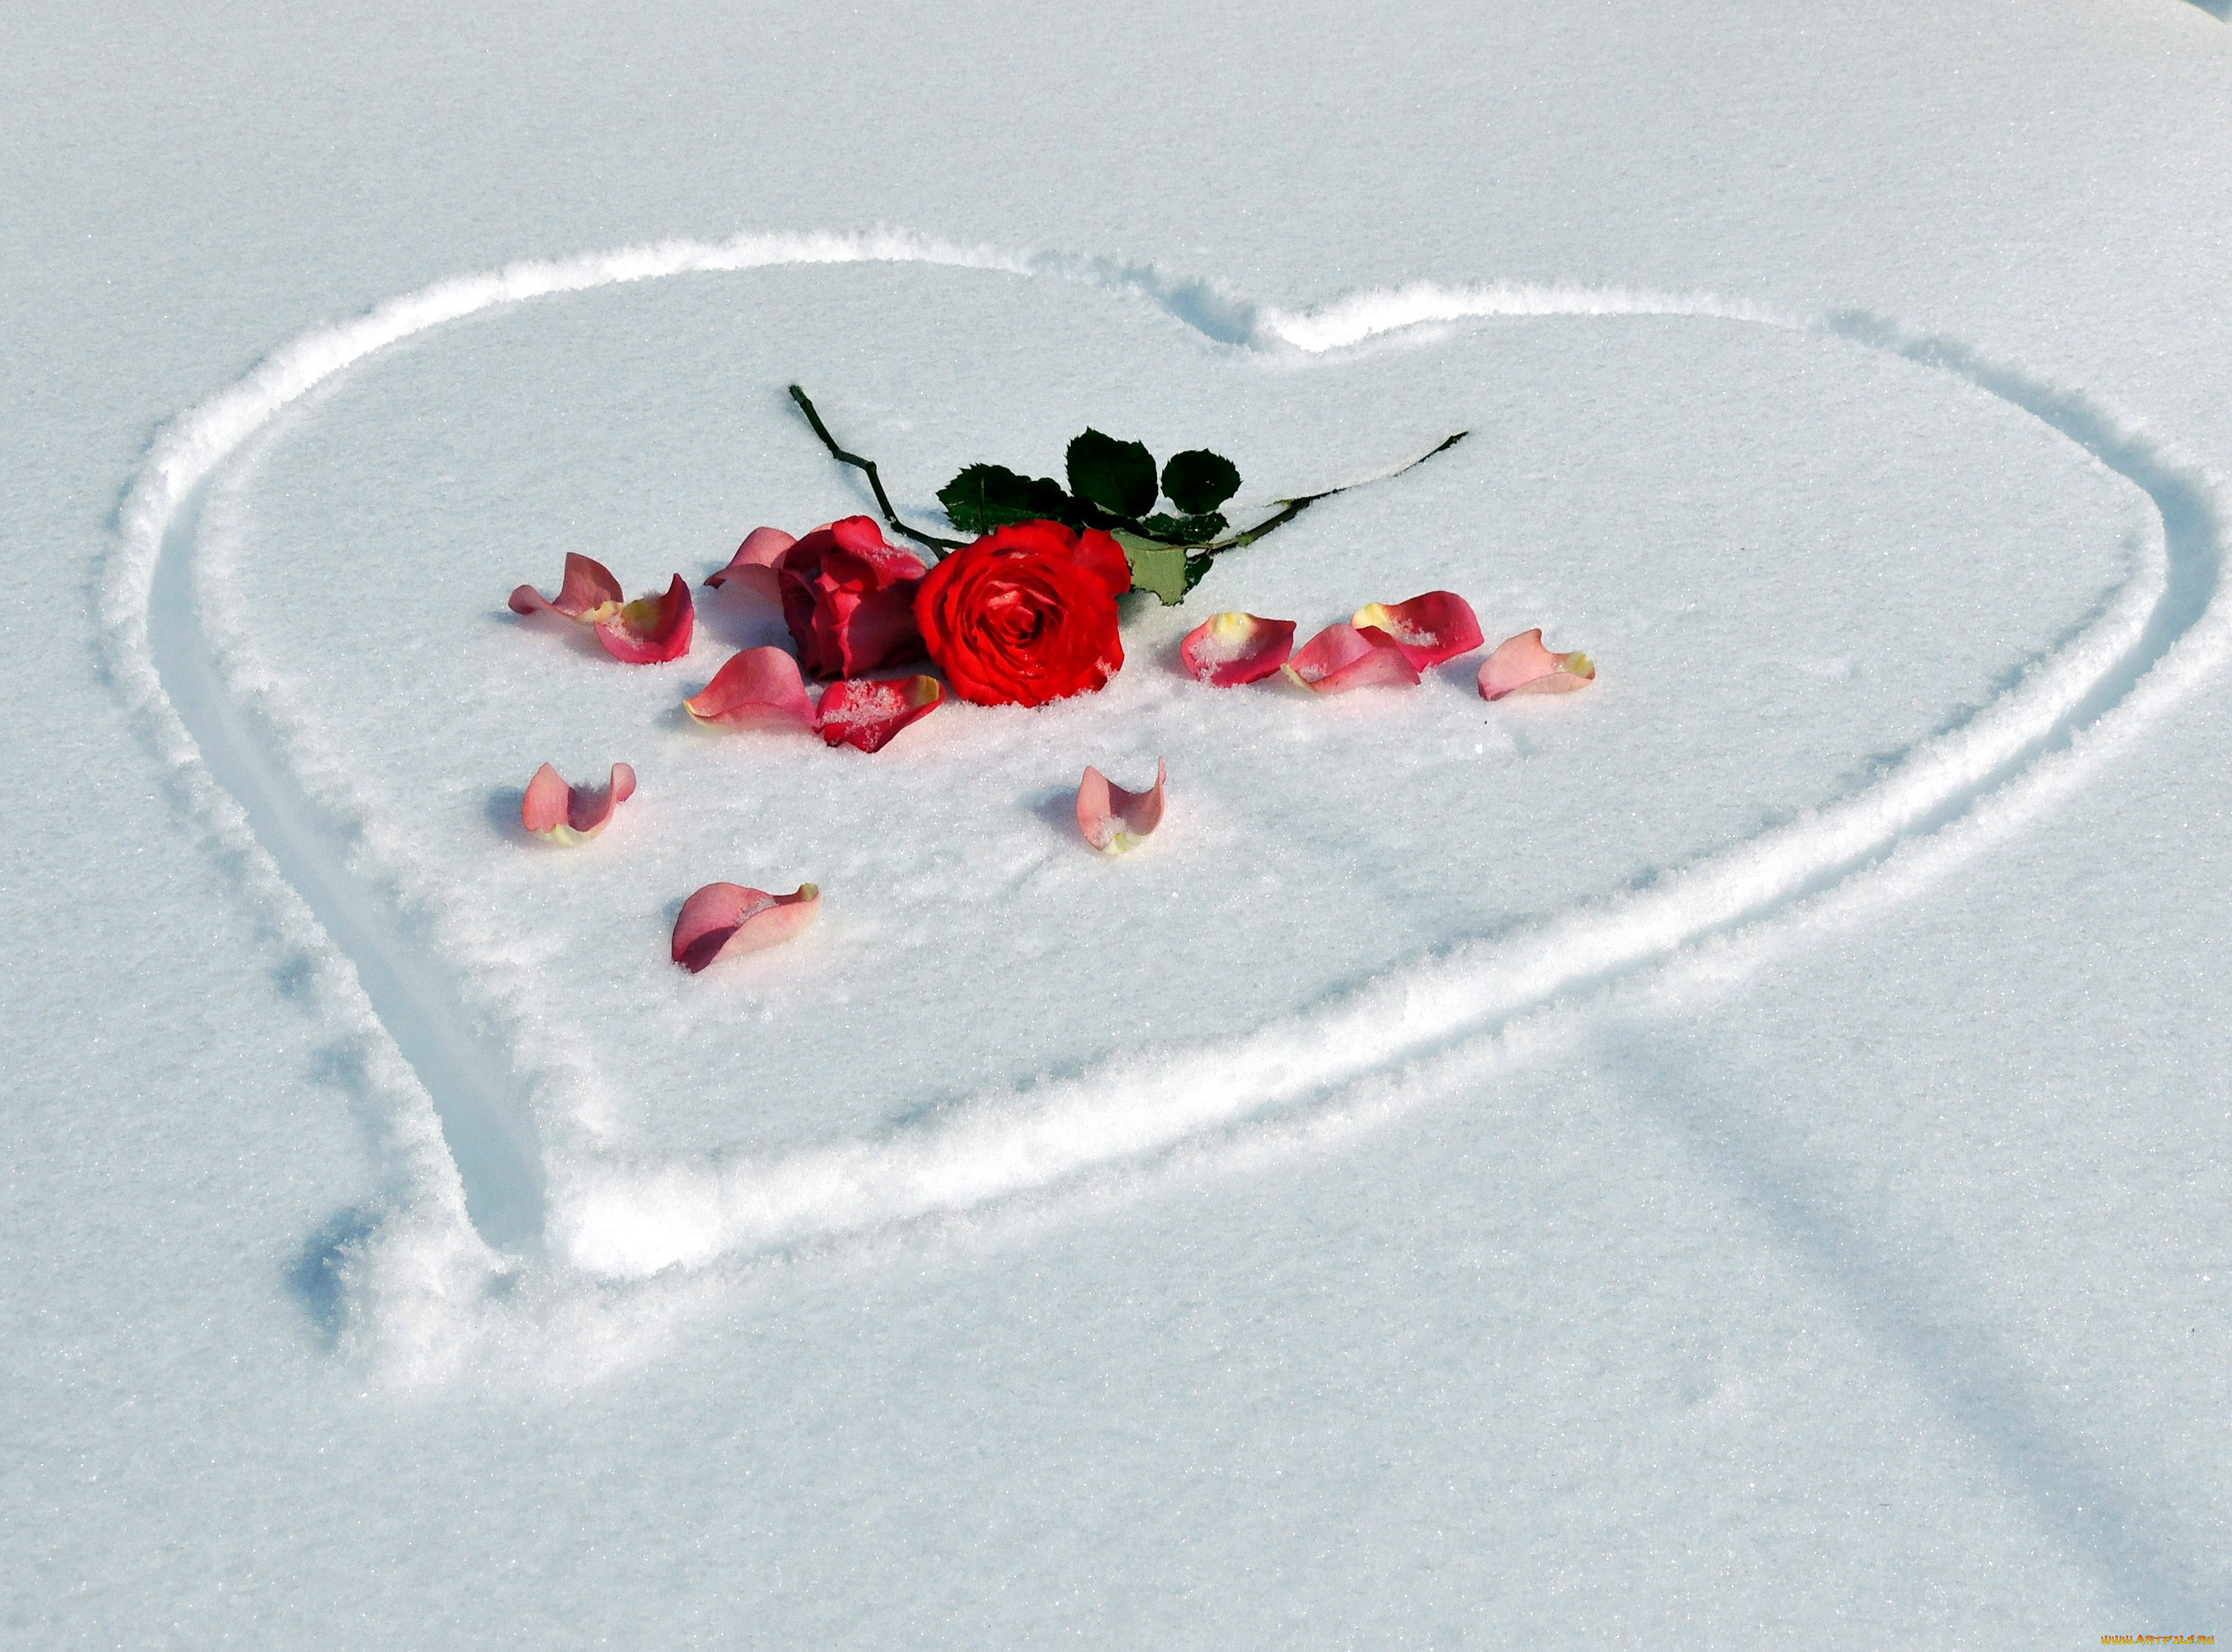 Красивая открытка со снегом. Розы на снегу. Сердце на снегу. Лепестки роз на снегу. Сердечко на снегу.